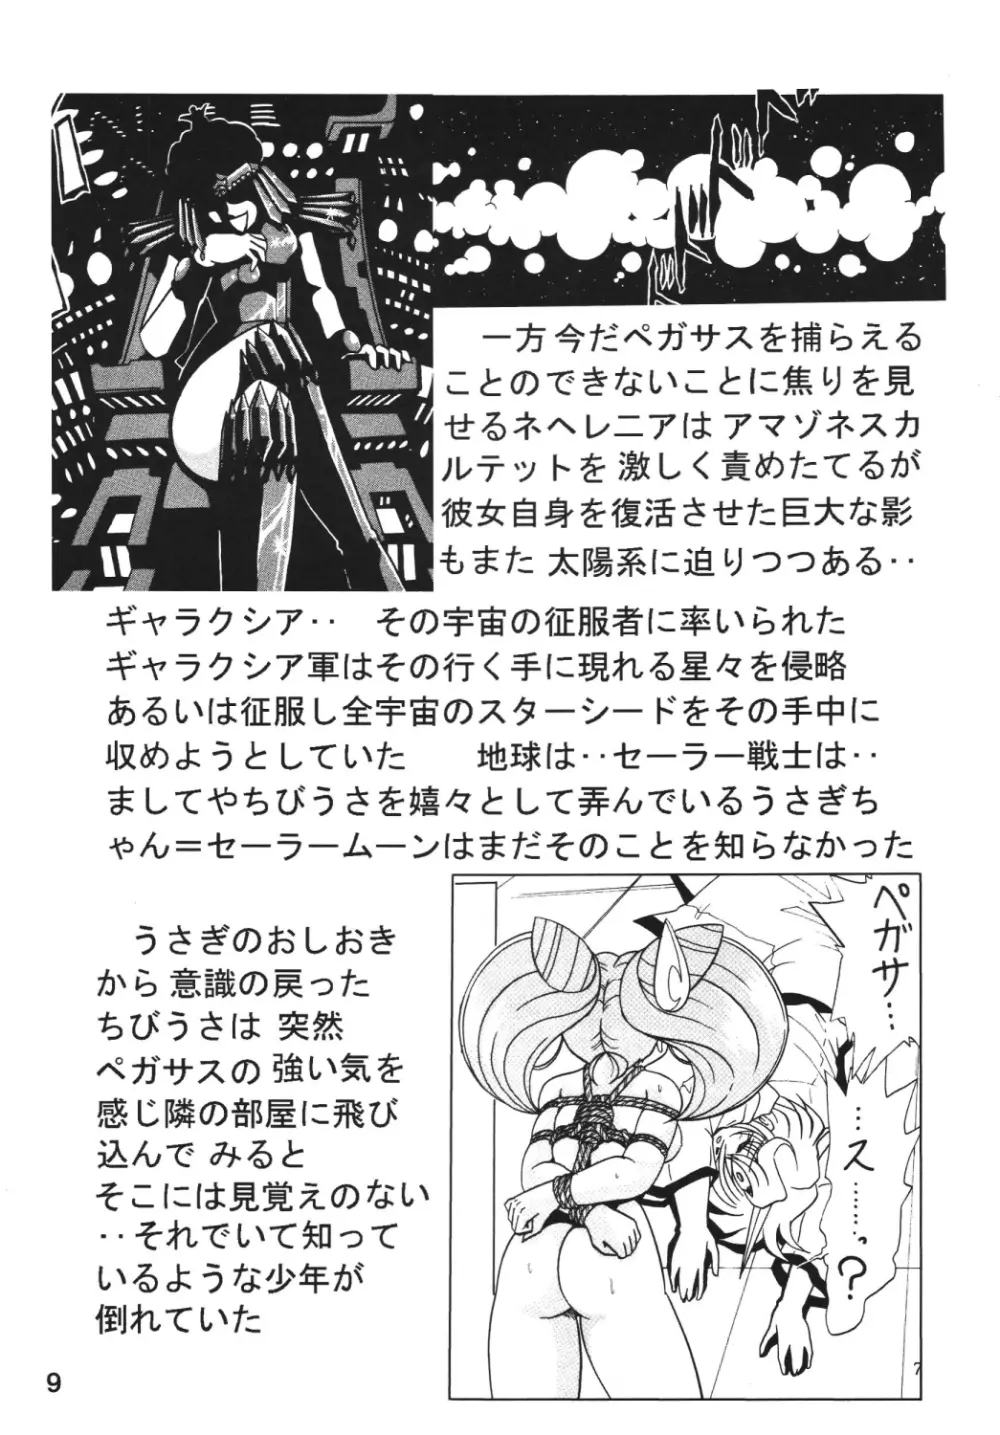 サイレント・サターン SS vol.7 8ページ